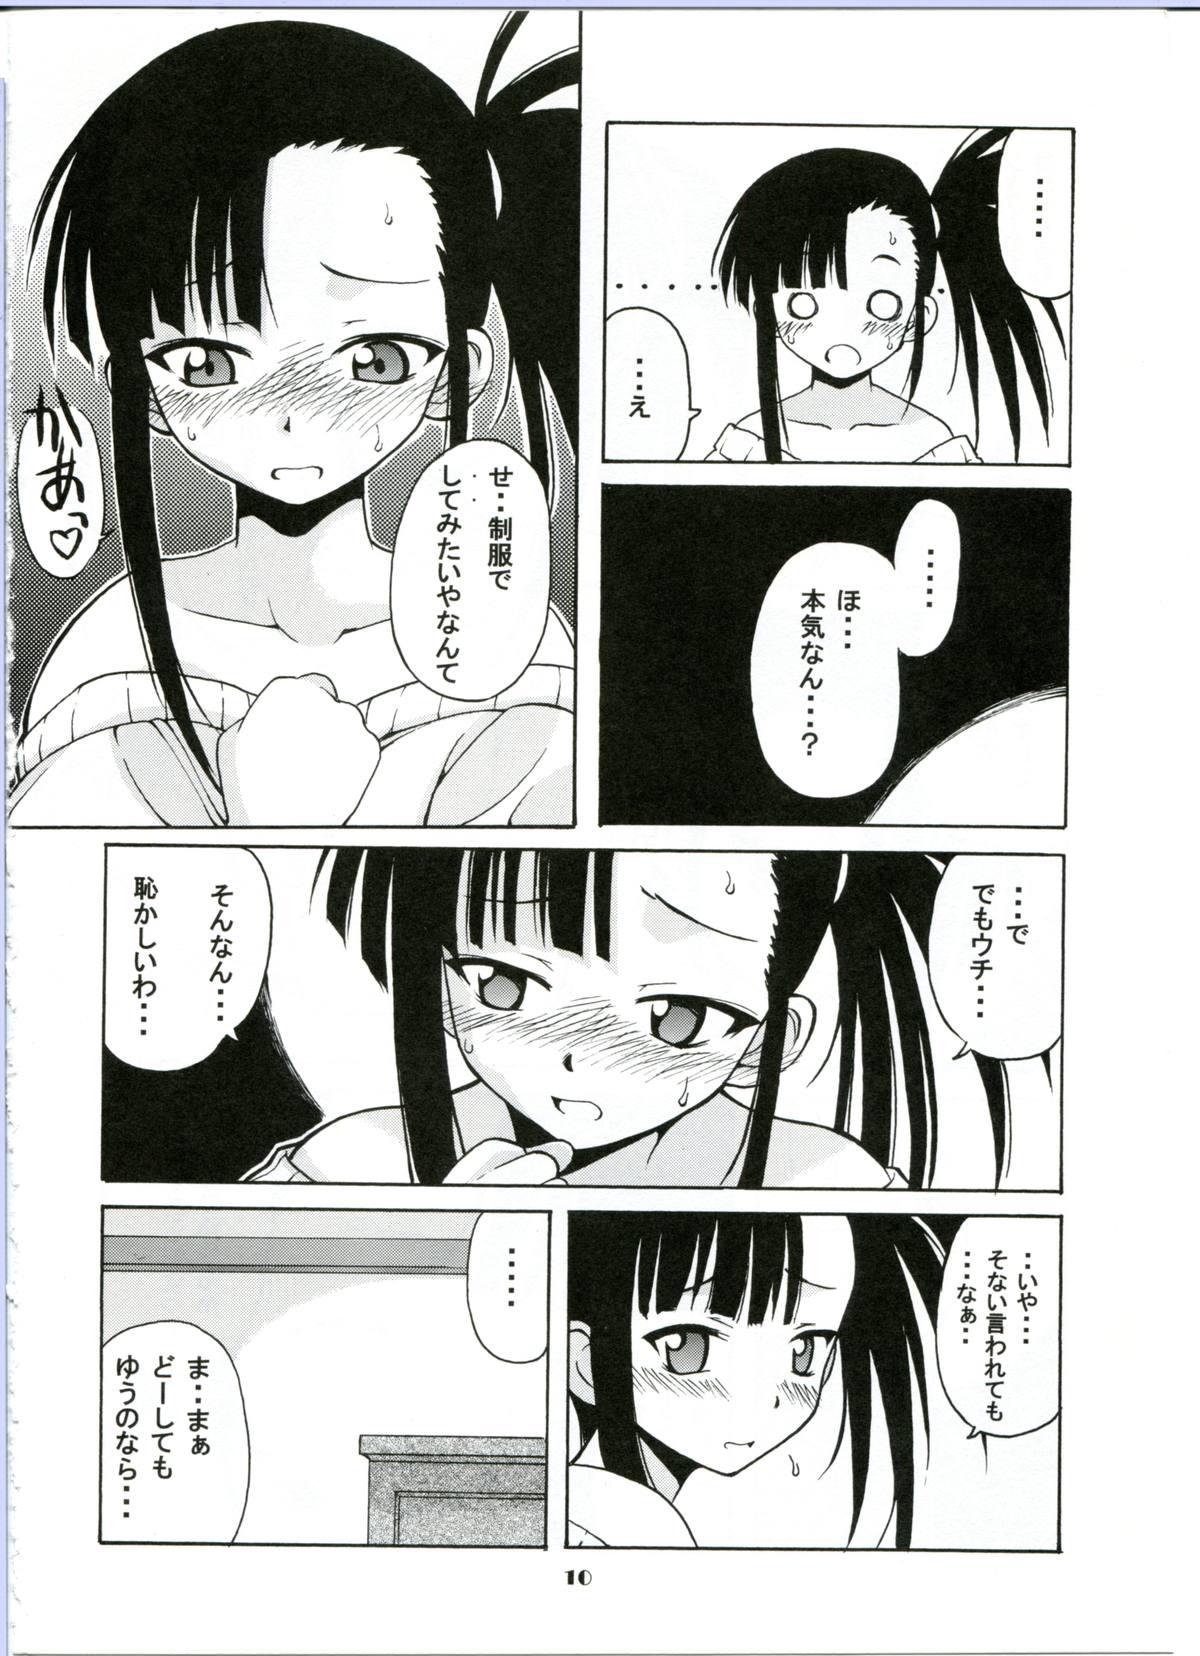 Butthole if CODE:02 - Mahou sensei negima Hot Mom - Page 10